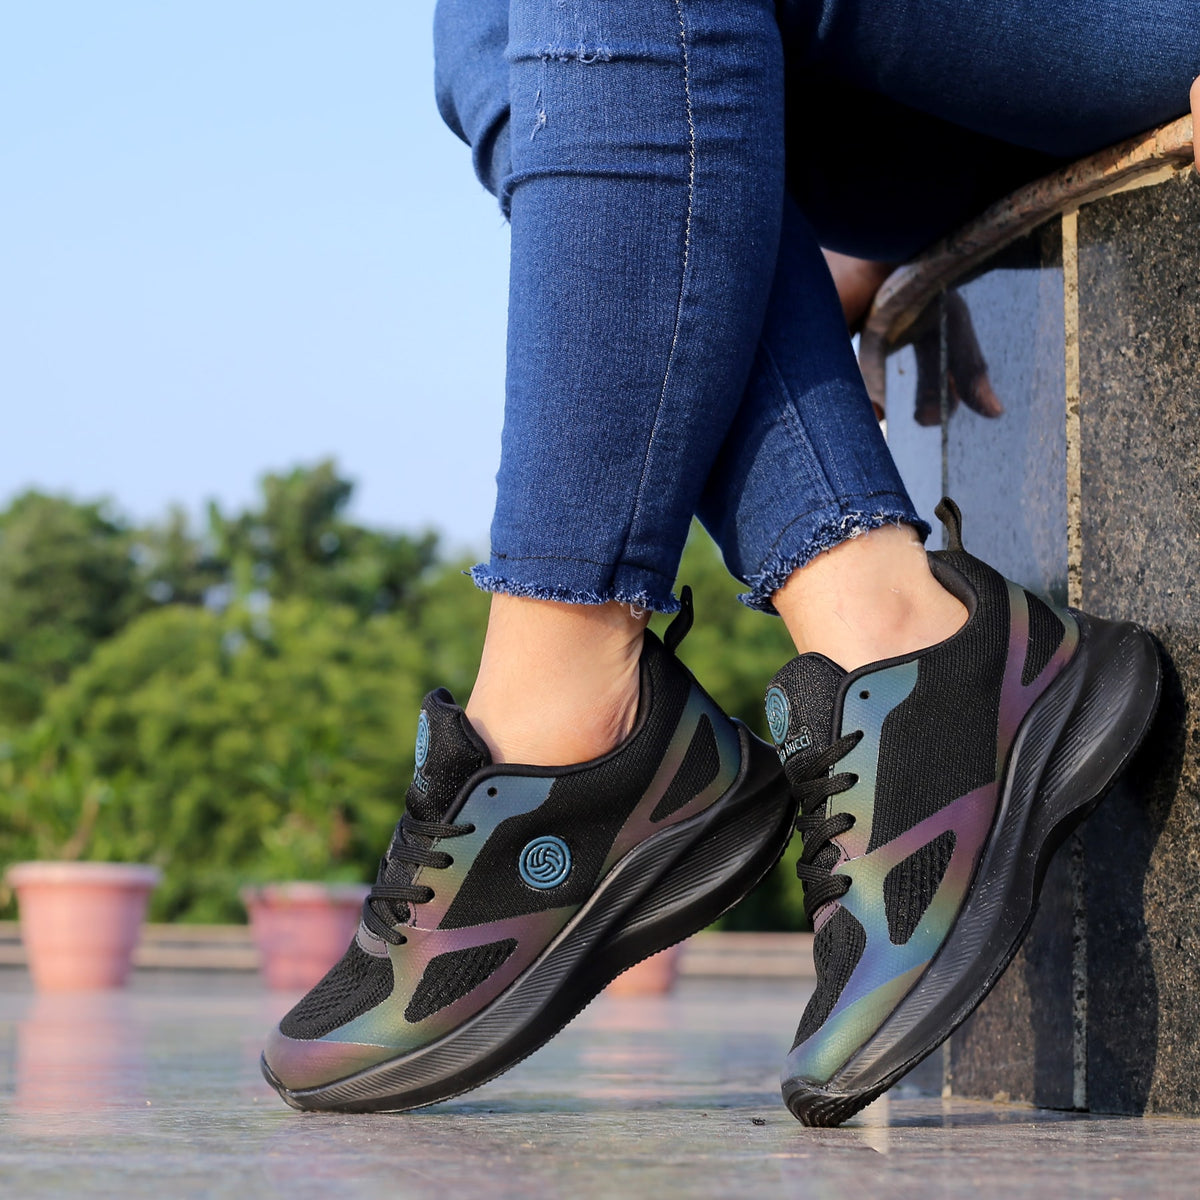 bacca bucci Women Colourblocked Sneakers (3) by Myntra